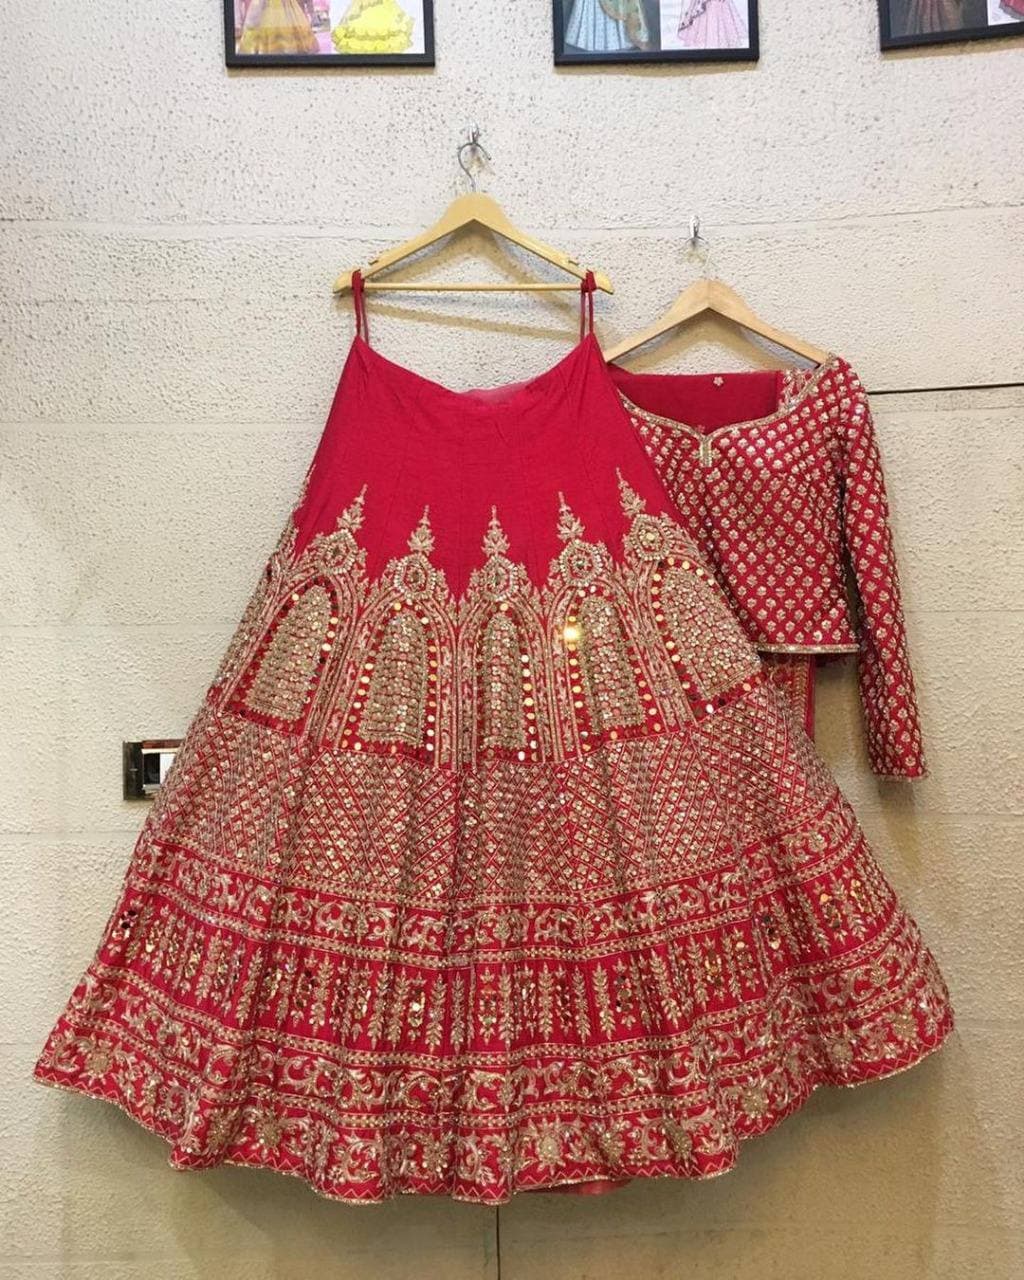 Red Lehenga Choli In Malai Satin Silk With Cording Work